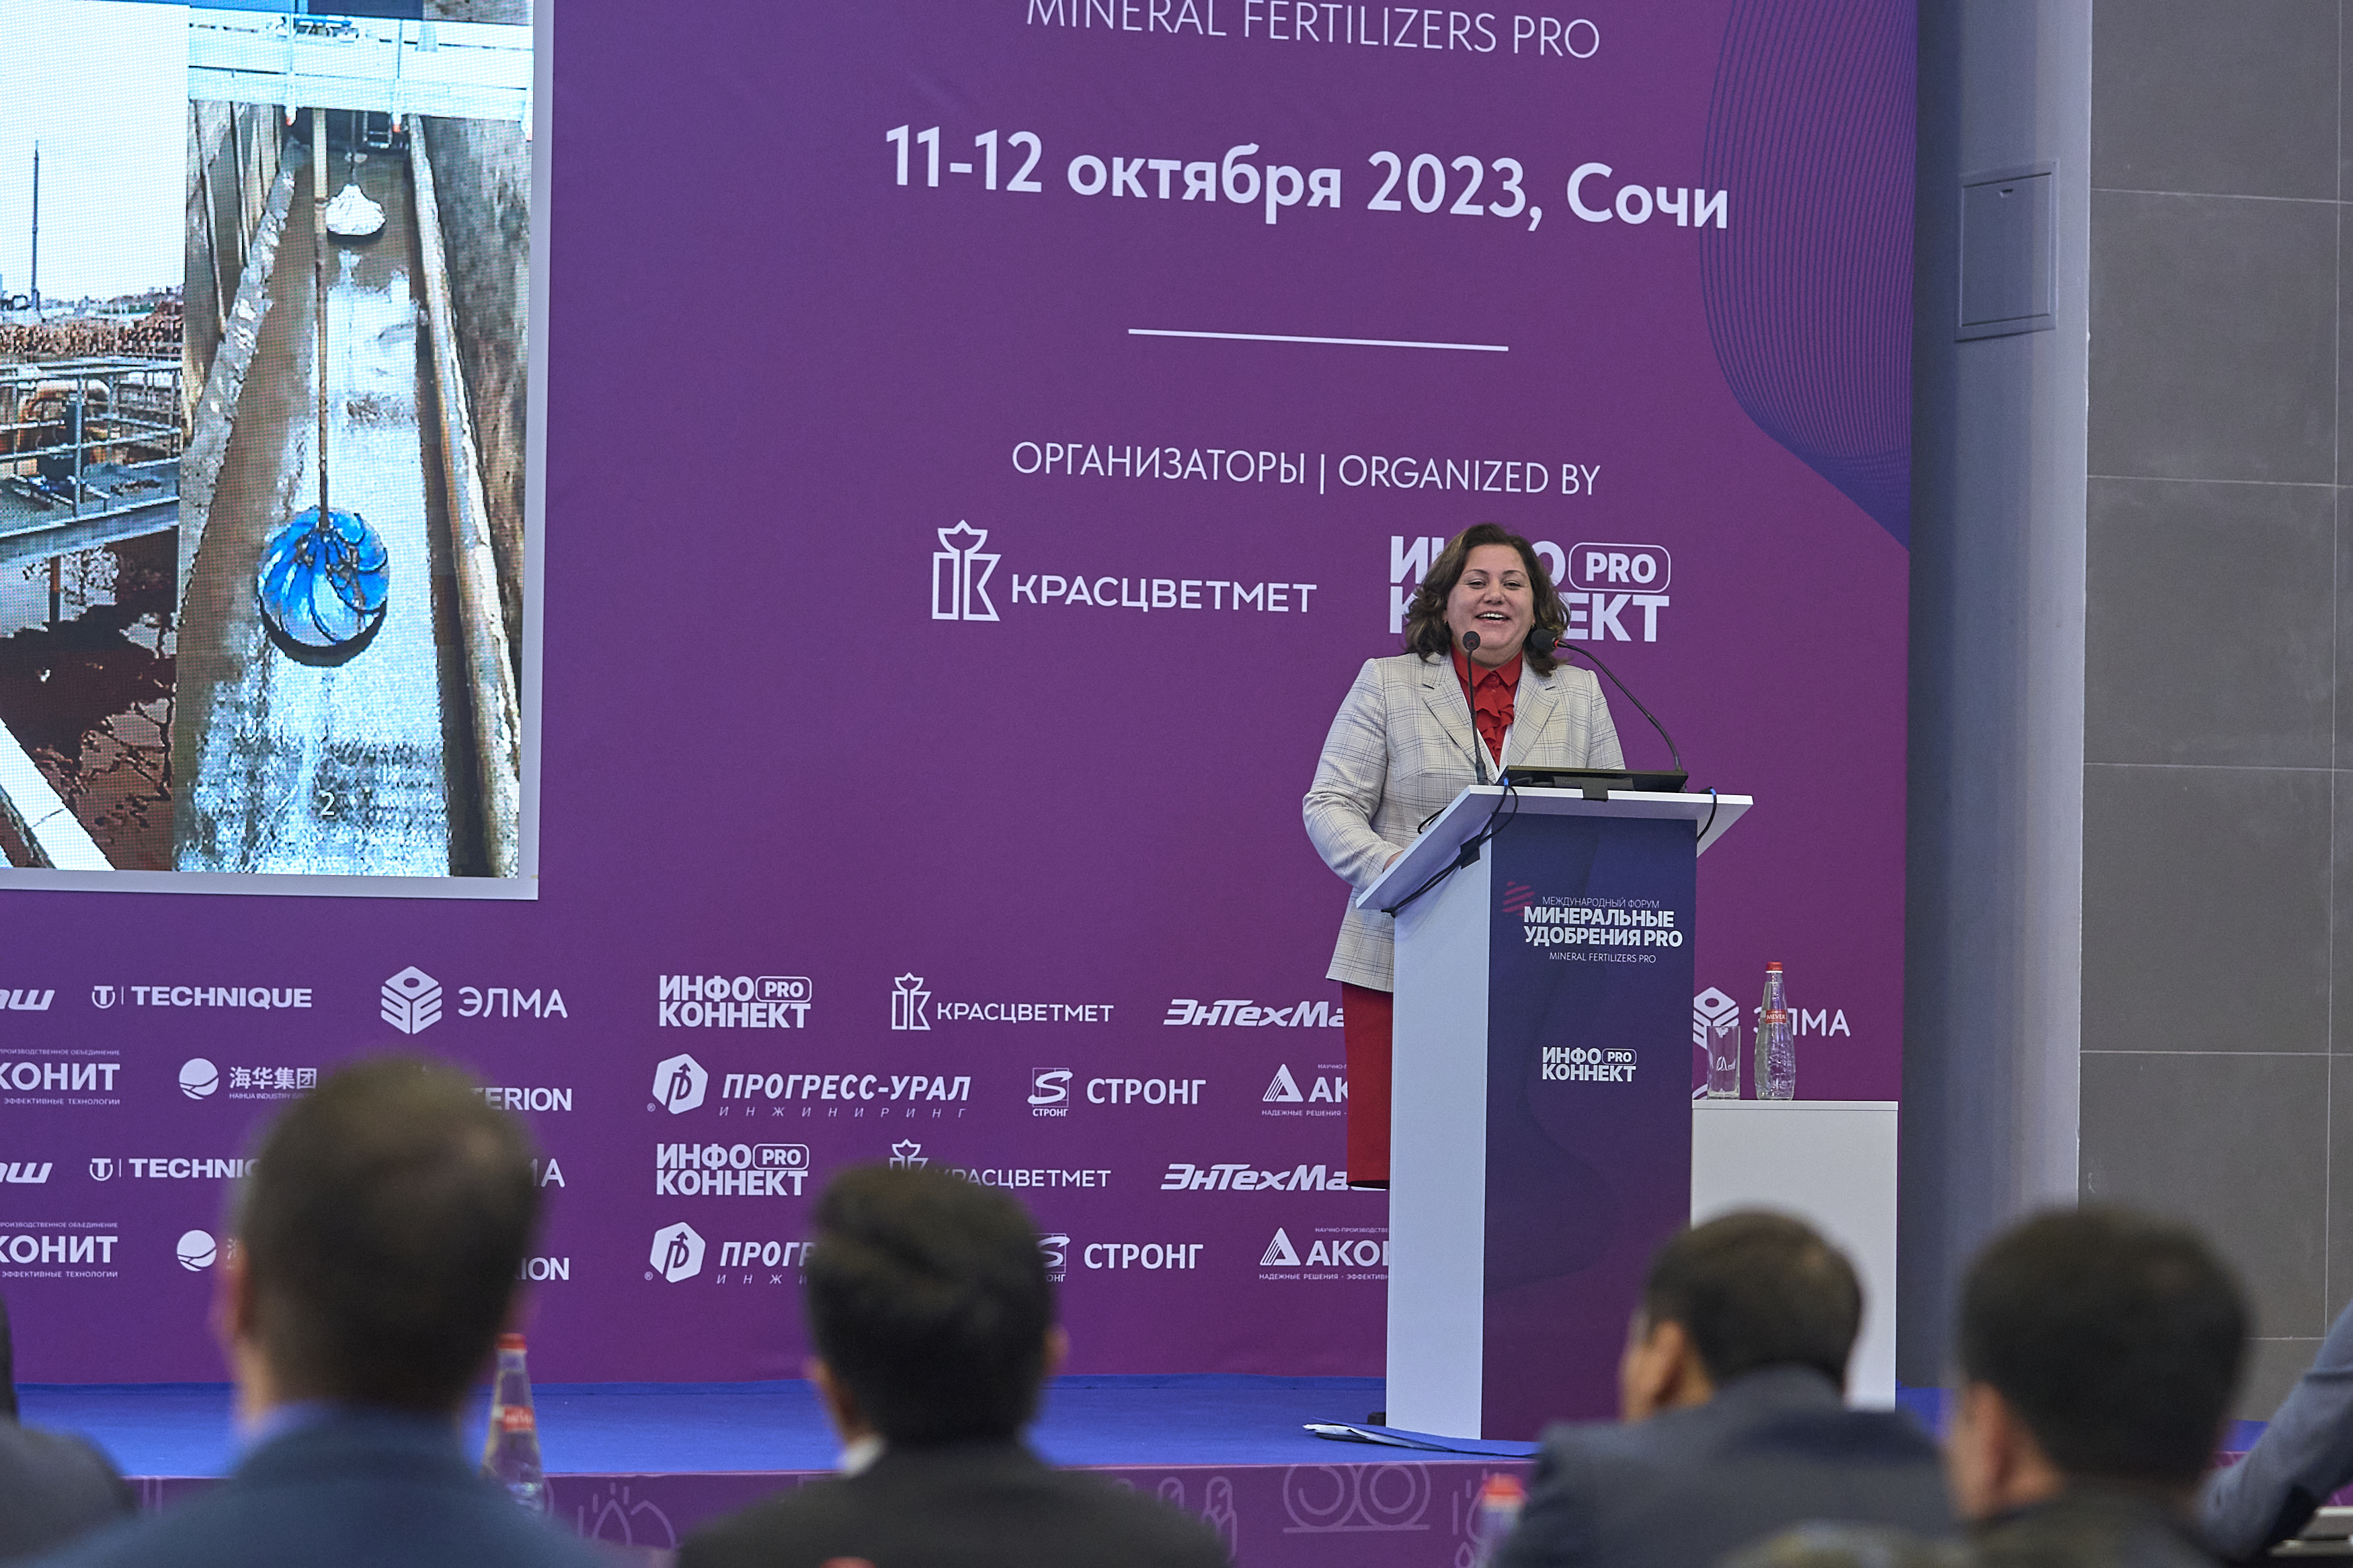 ГК "Элма-Астерион" приняла участие в международном форуме "Минеральные удобрения PRO" в Сочи. 